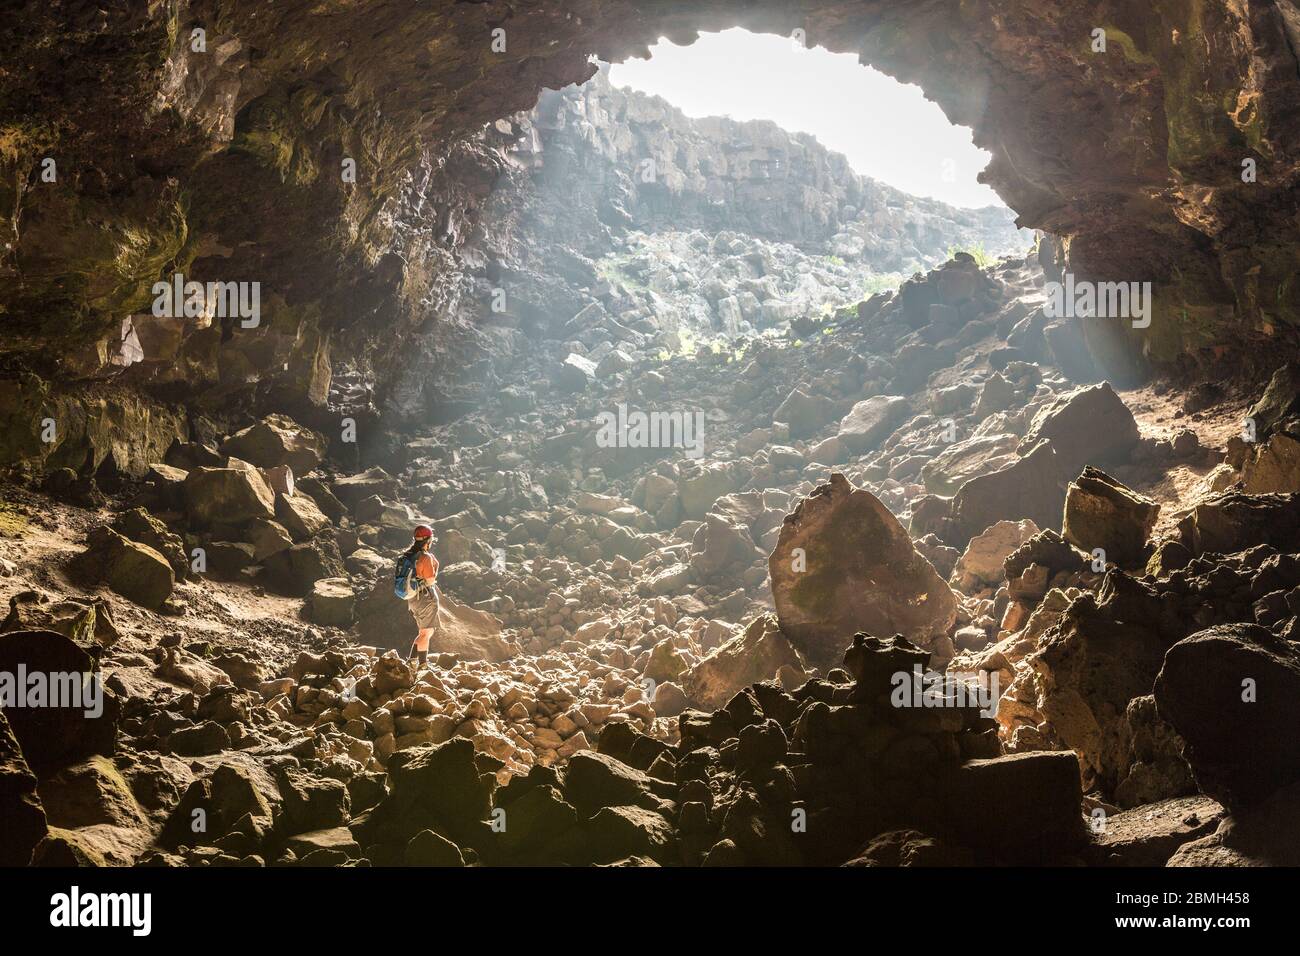 Ingresso alla grotta di lava, Jameo Puerta Falsa, Lanzarote, Isole Canarie, Spagna Foto Stock